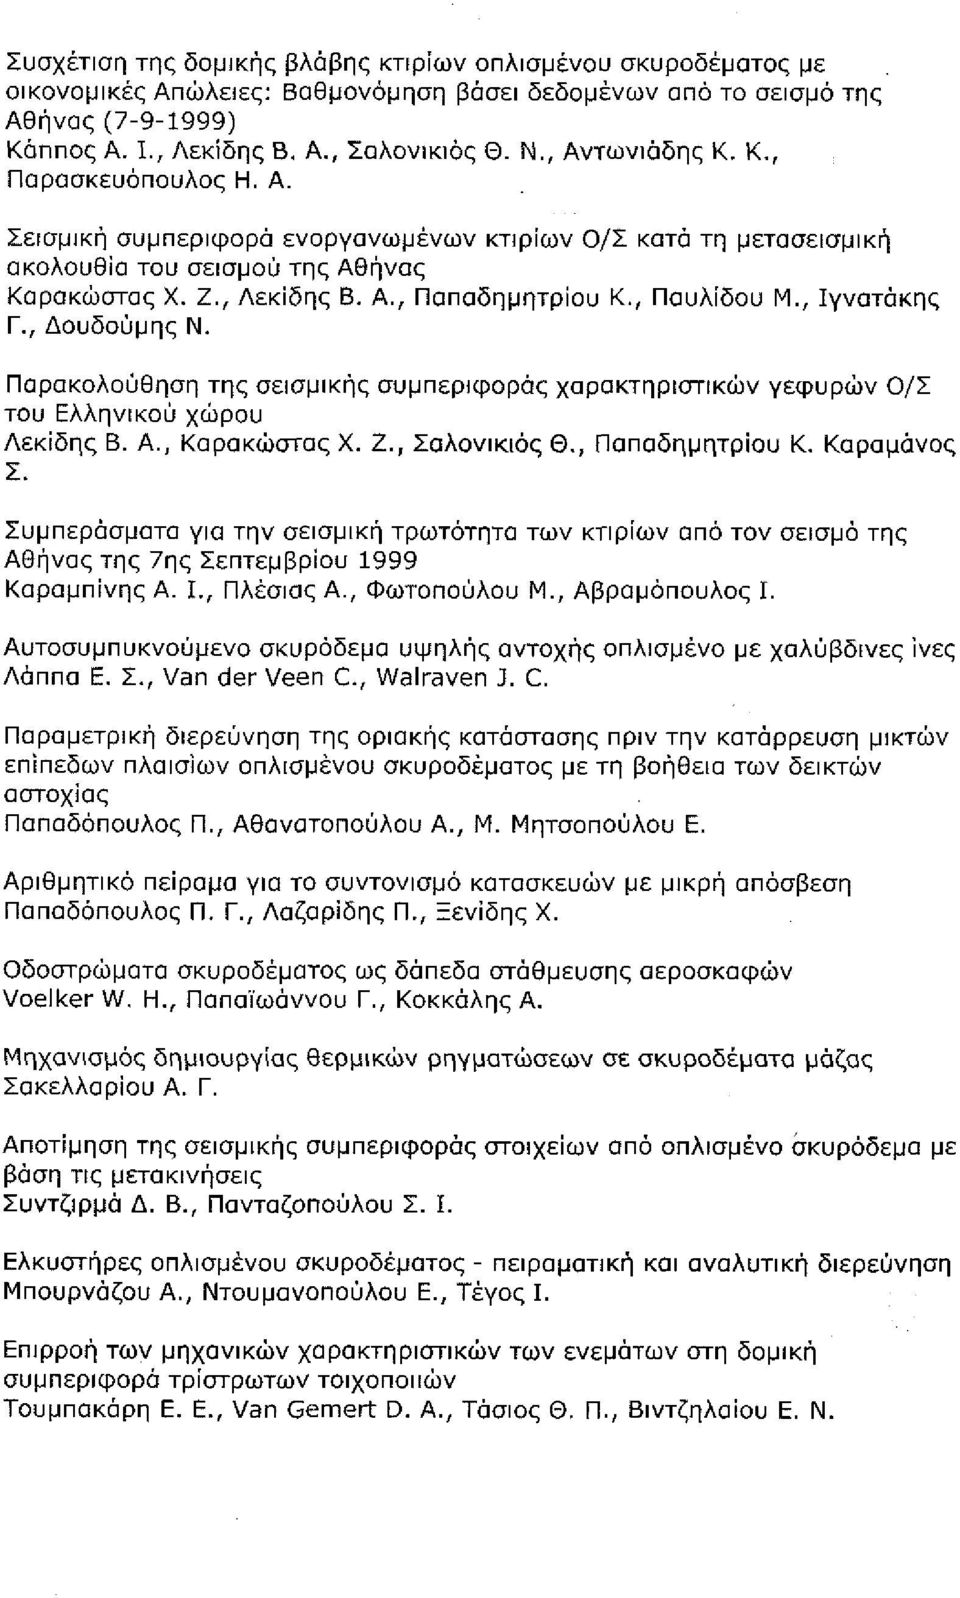 , Παυλίδου Μ., Ιγνατάκης Γ., Δουδοϋμης Ν., σελ. 496-507 Β3.10 Παρακολούθηση της σεισμικής συμπεριφοράς χαρακτηριστικών γεφυρών Ο/Σ του Ελληνικού χώρου -, Λεκίδης Β. Α., Καρακώστας Χ. Ζ., Σαλονικιός Θ.